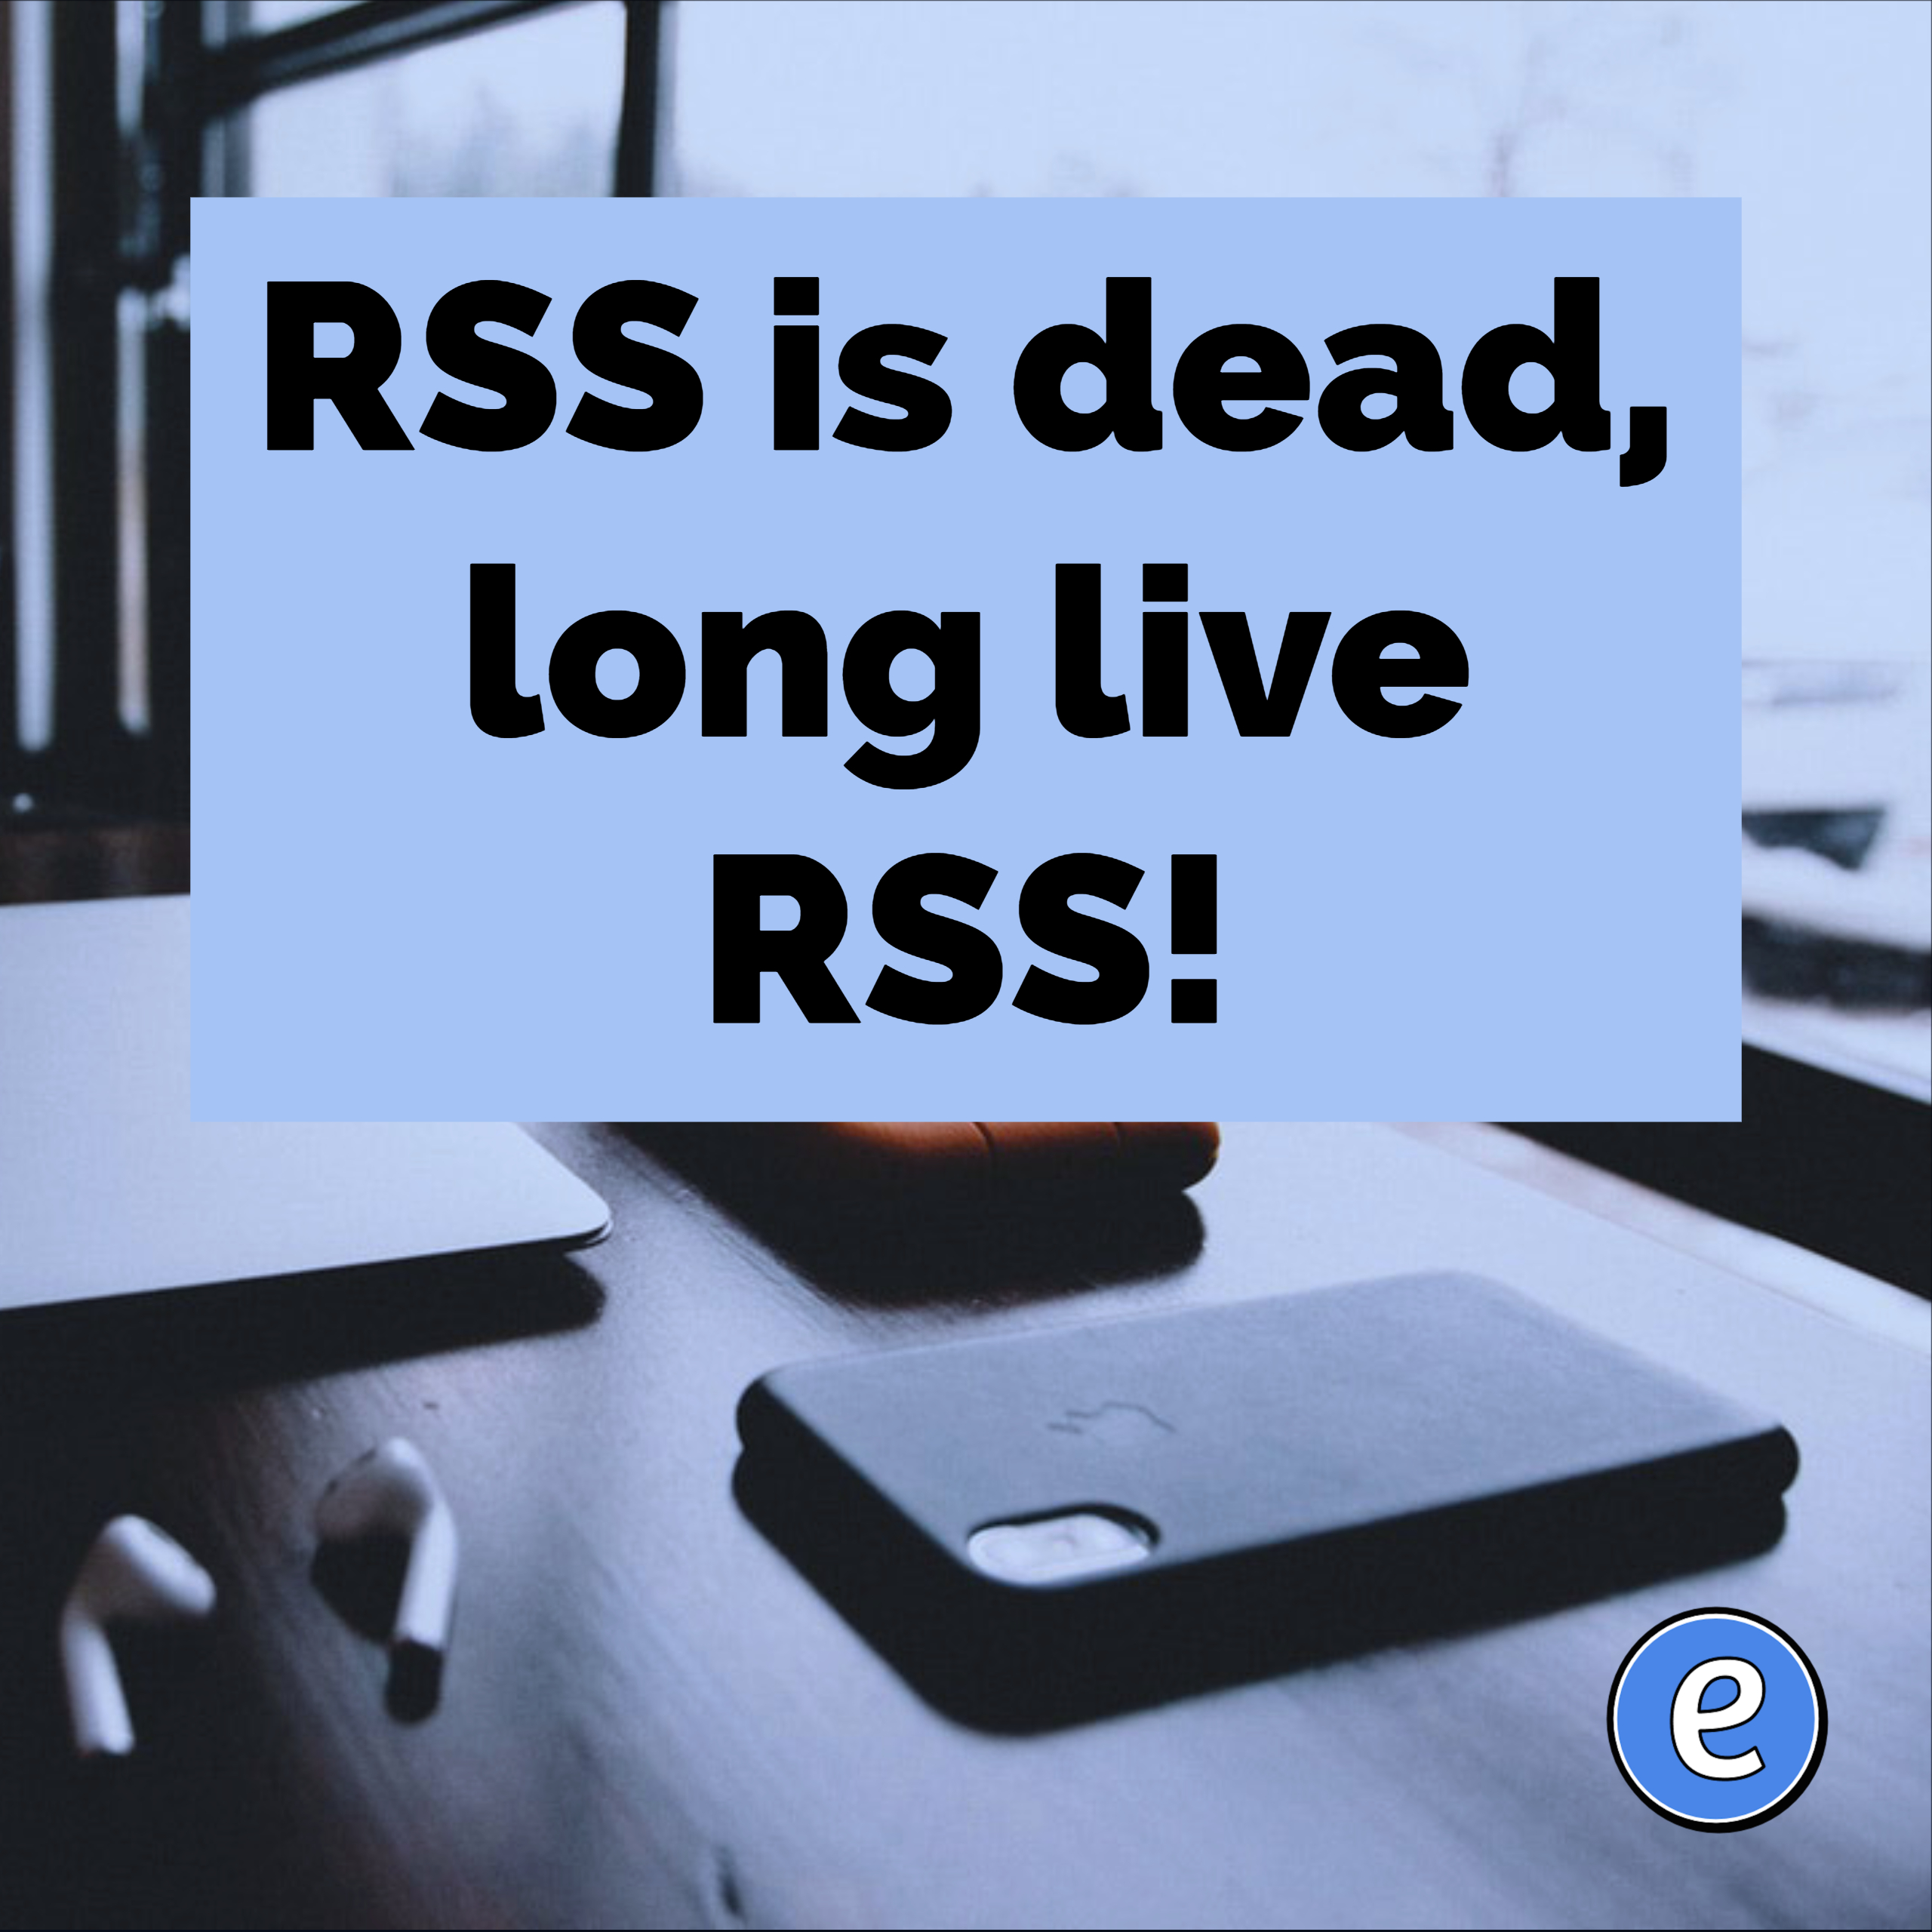 RSS is dead, long live RSS!